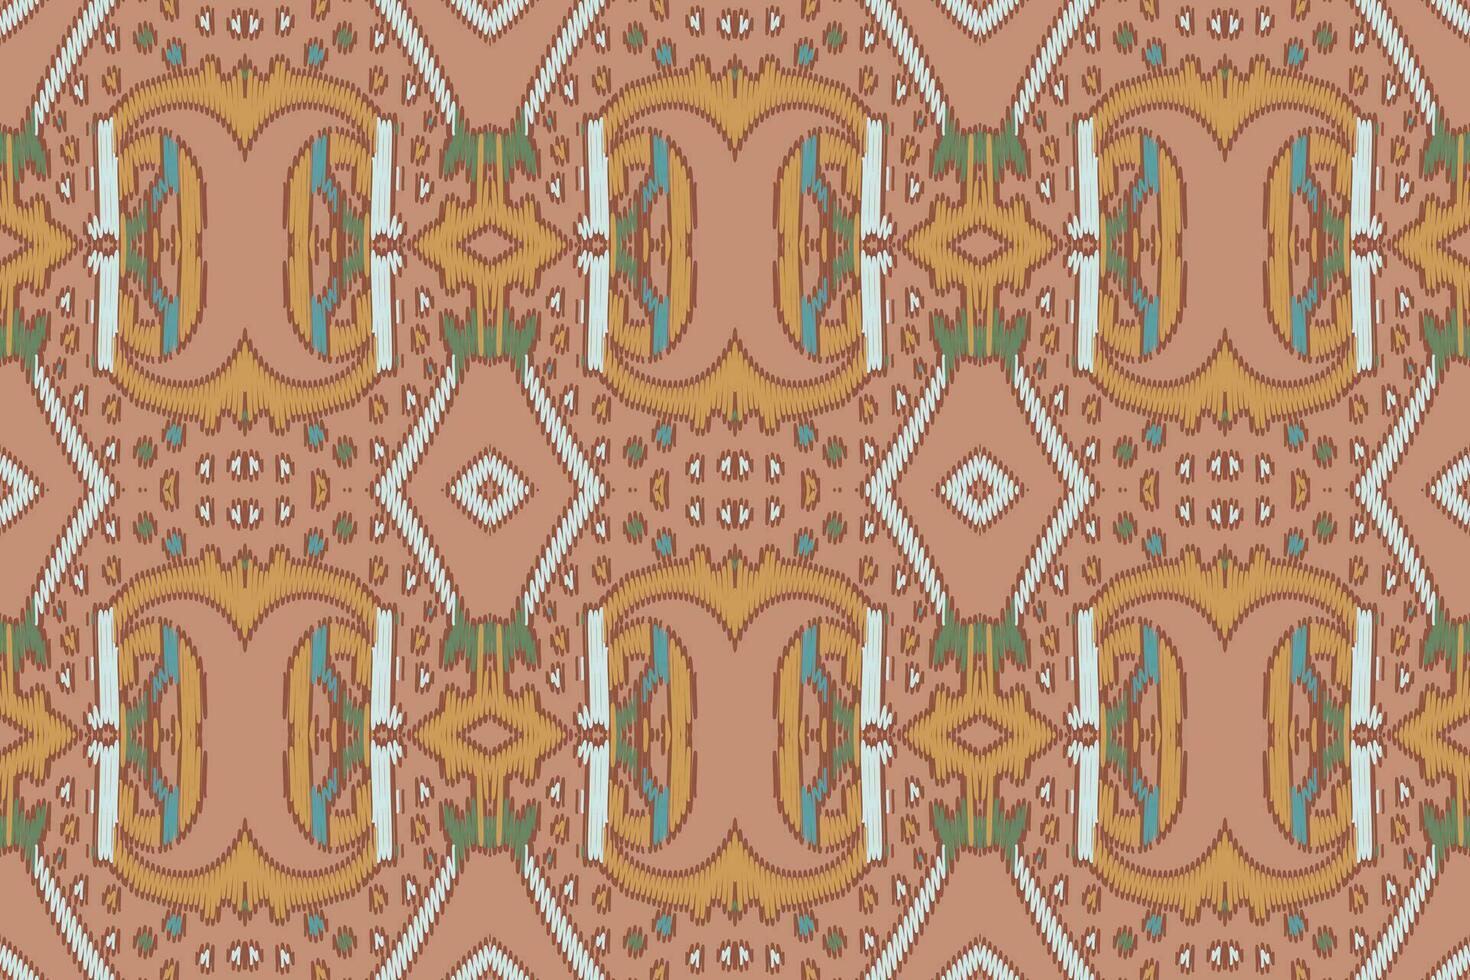 zijde kleding stof patola sari patroon naadloos Australisch aboriginal patroon motief borduurwerk, ikat borduurwerk vector ontwerp voor afdrukken Egyptische patroon Tibetaans mandala bandana